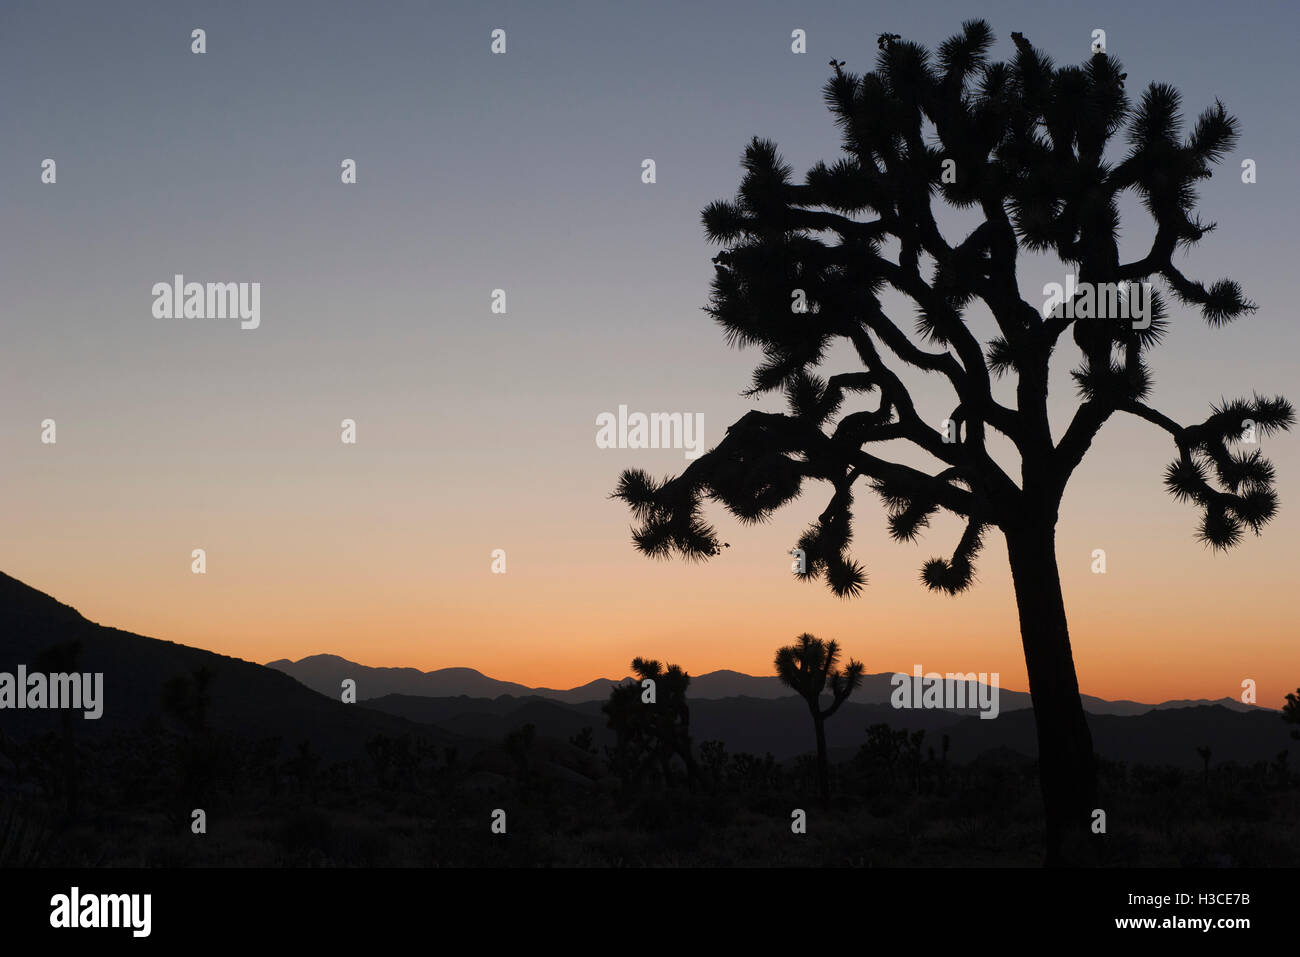 USA, California, Joshua Tree National Park at twilight Stock Photo